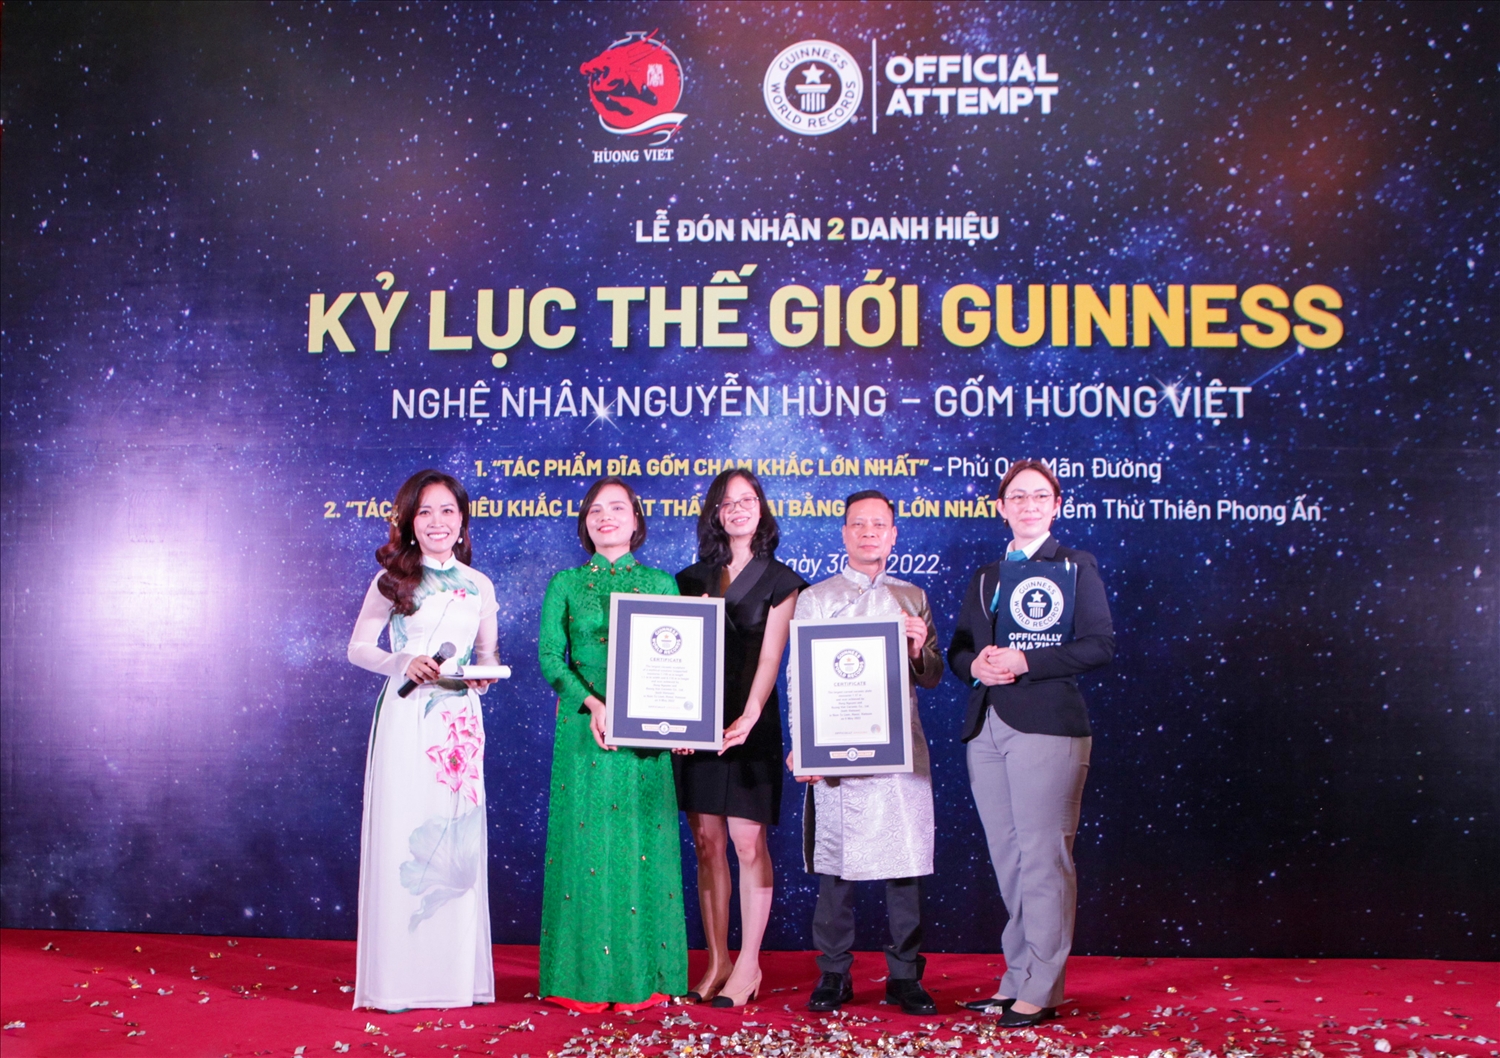 Nghệ nhân Nguyễn Hùng nhận danh hiệu từ Đại diện Tổ chức Guinness